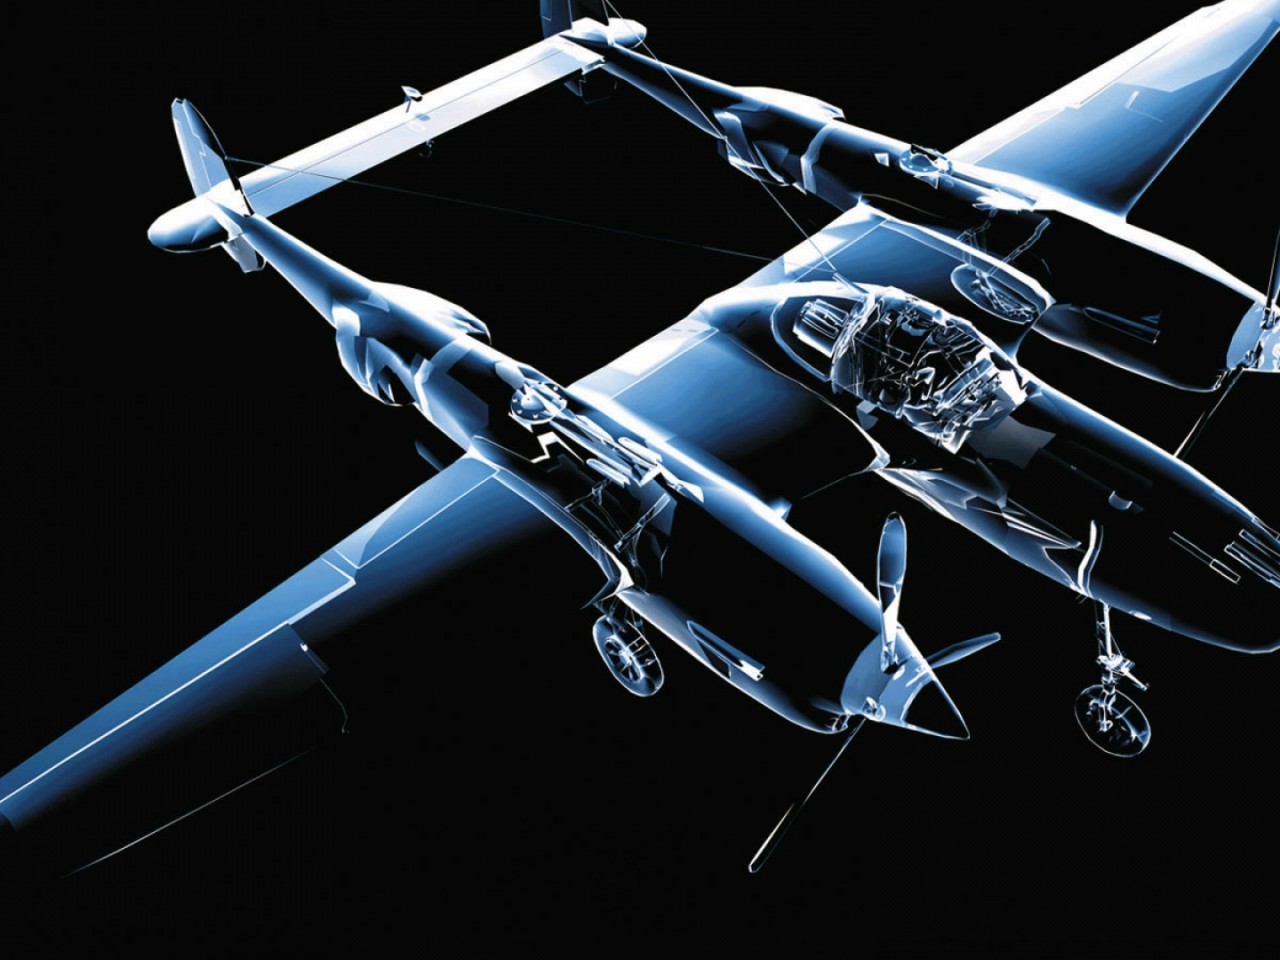 3D Aircraft wallpaper - High Definition, High Resolution HD Wallpapers :  High Definition, High Resolution HD Wallpapers